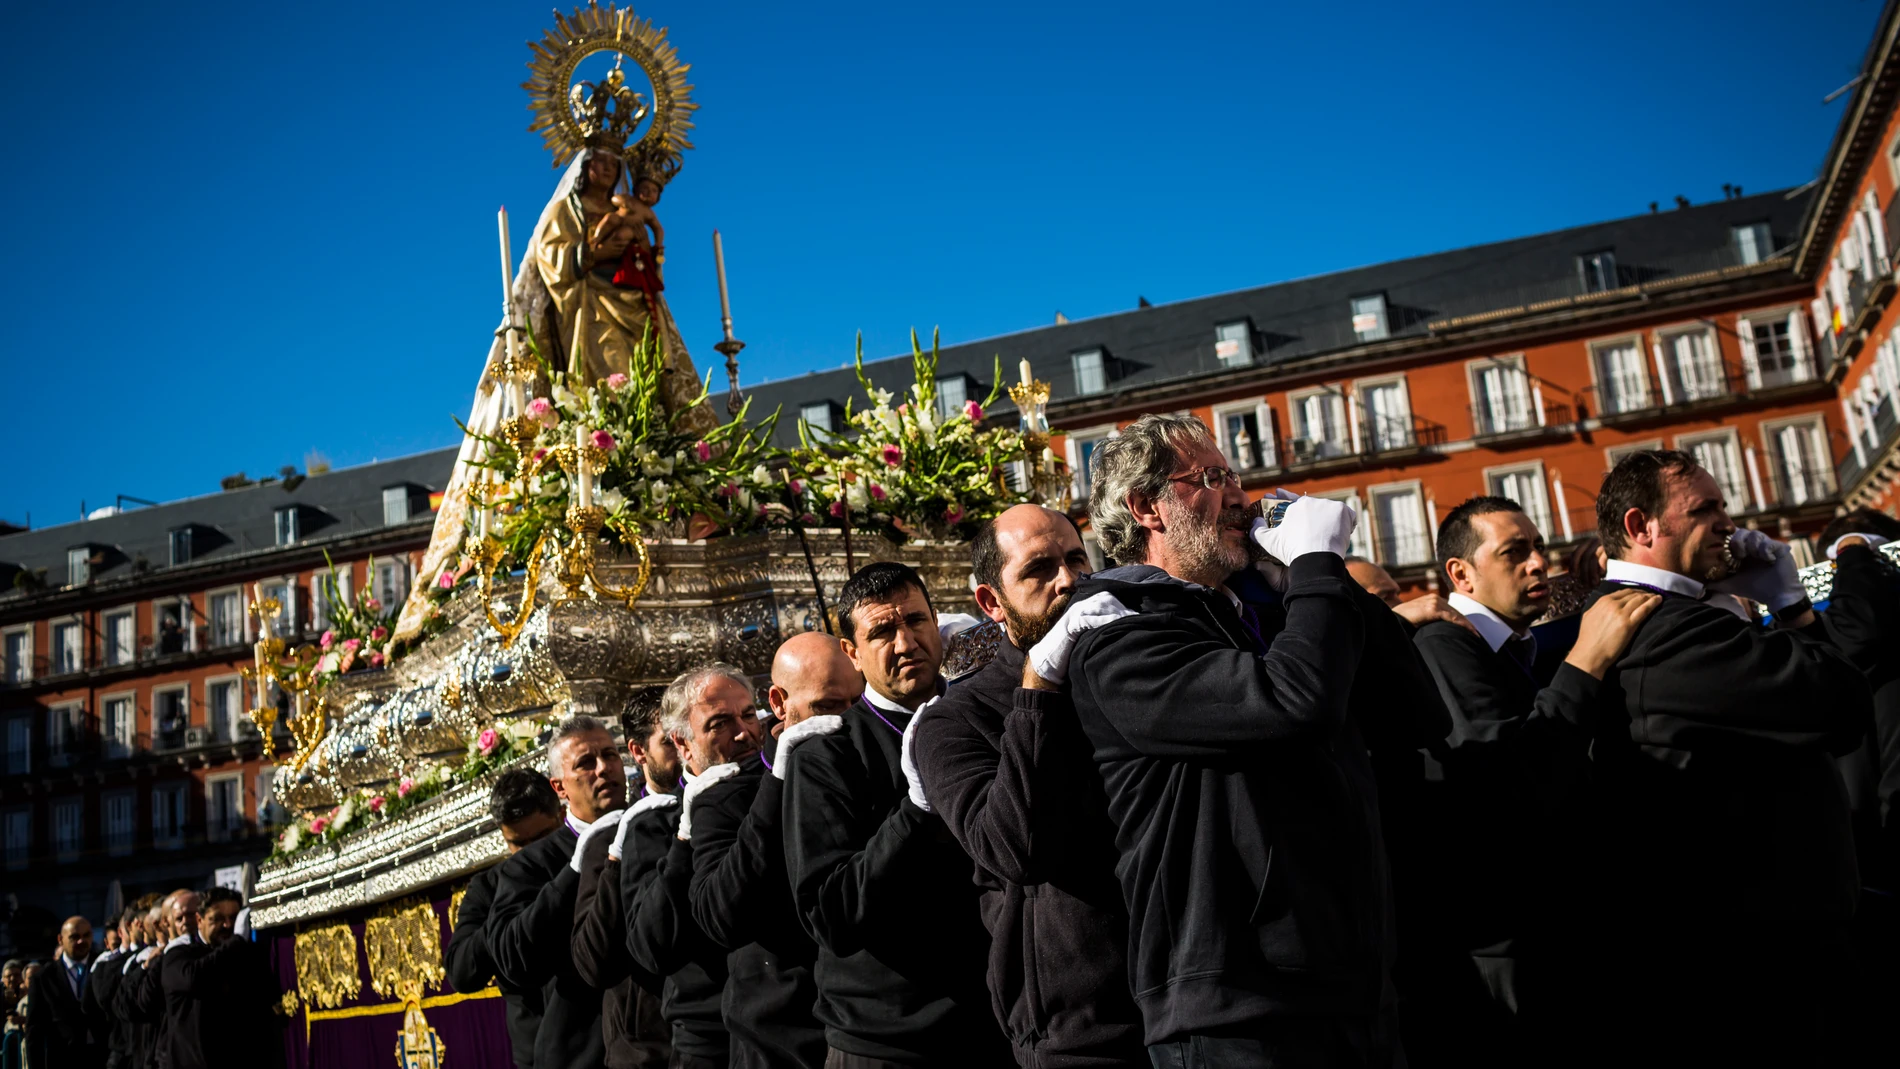 Misa en honor a la Virgen de La Almudena en la Plaza Mayor de Madrid